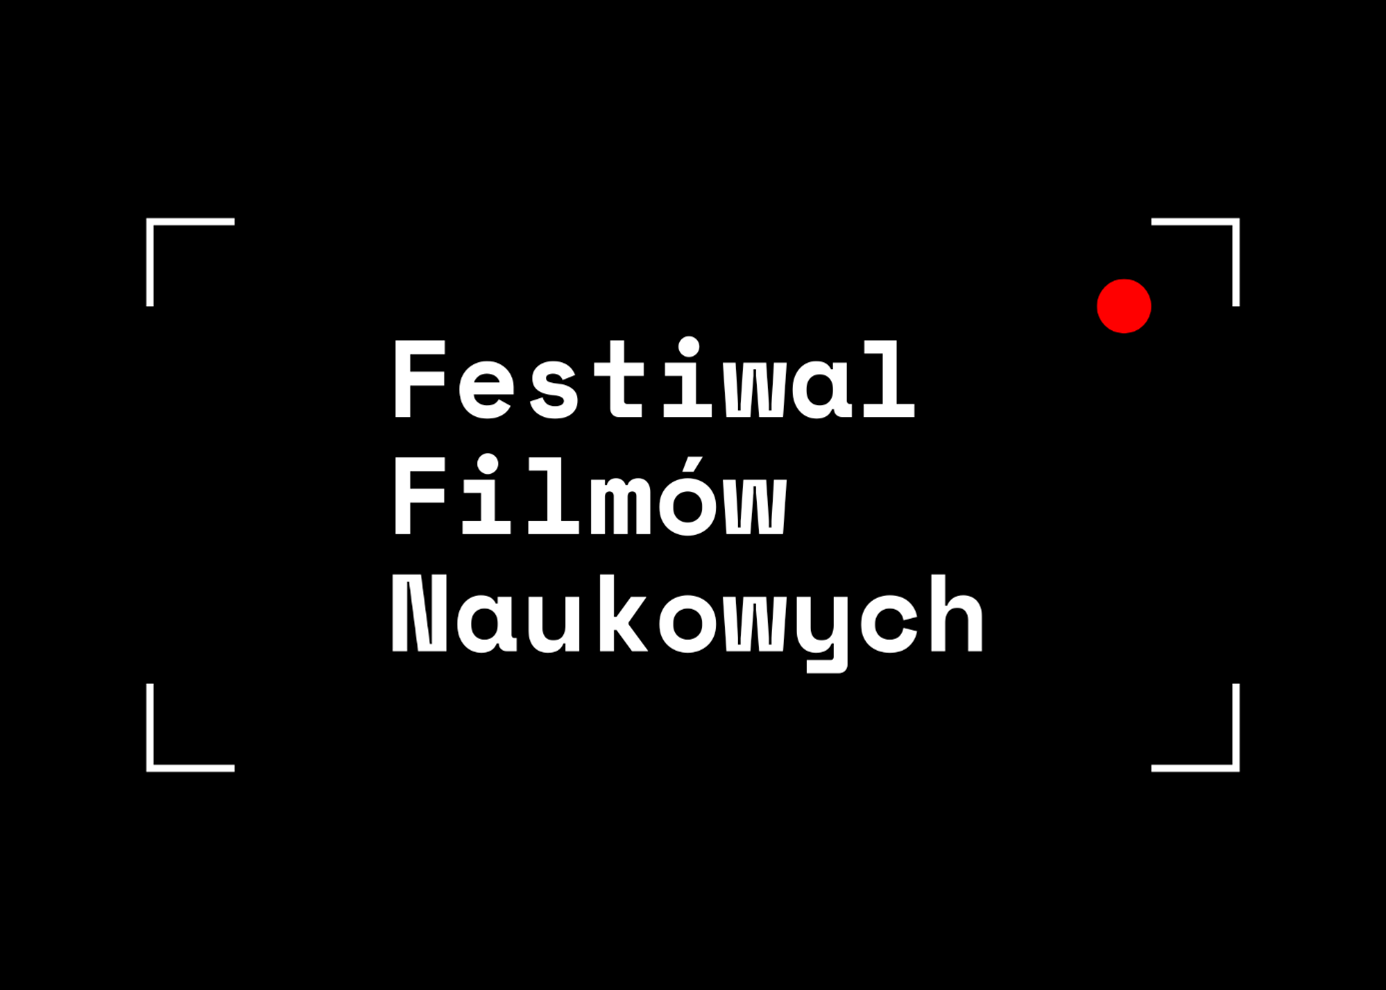 Plakat Festiwalu Filmów Naukowych: na czarnym tle widać nazwę festiwalu wpisaną w białe kątowe ramki imitujące kadr kamery cyfrowej, pod prawą górną ramką kątową  widać też czerwoną kropkę symbolizującą czynność nagrywania.